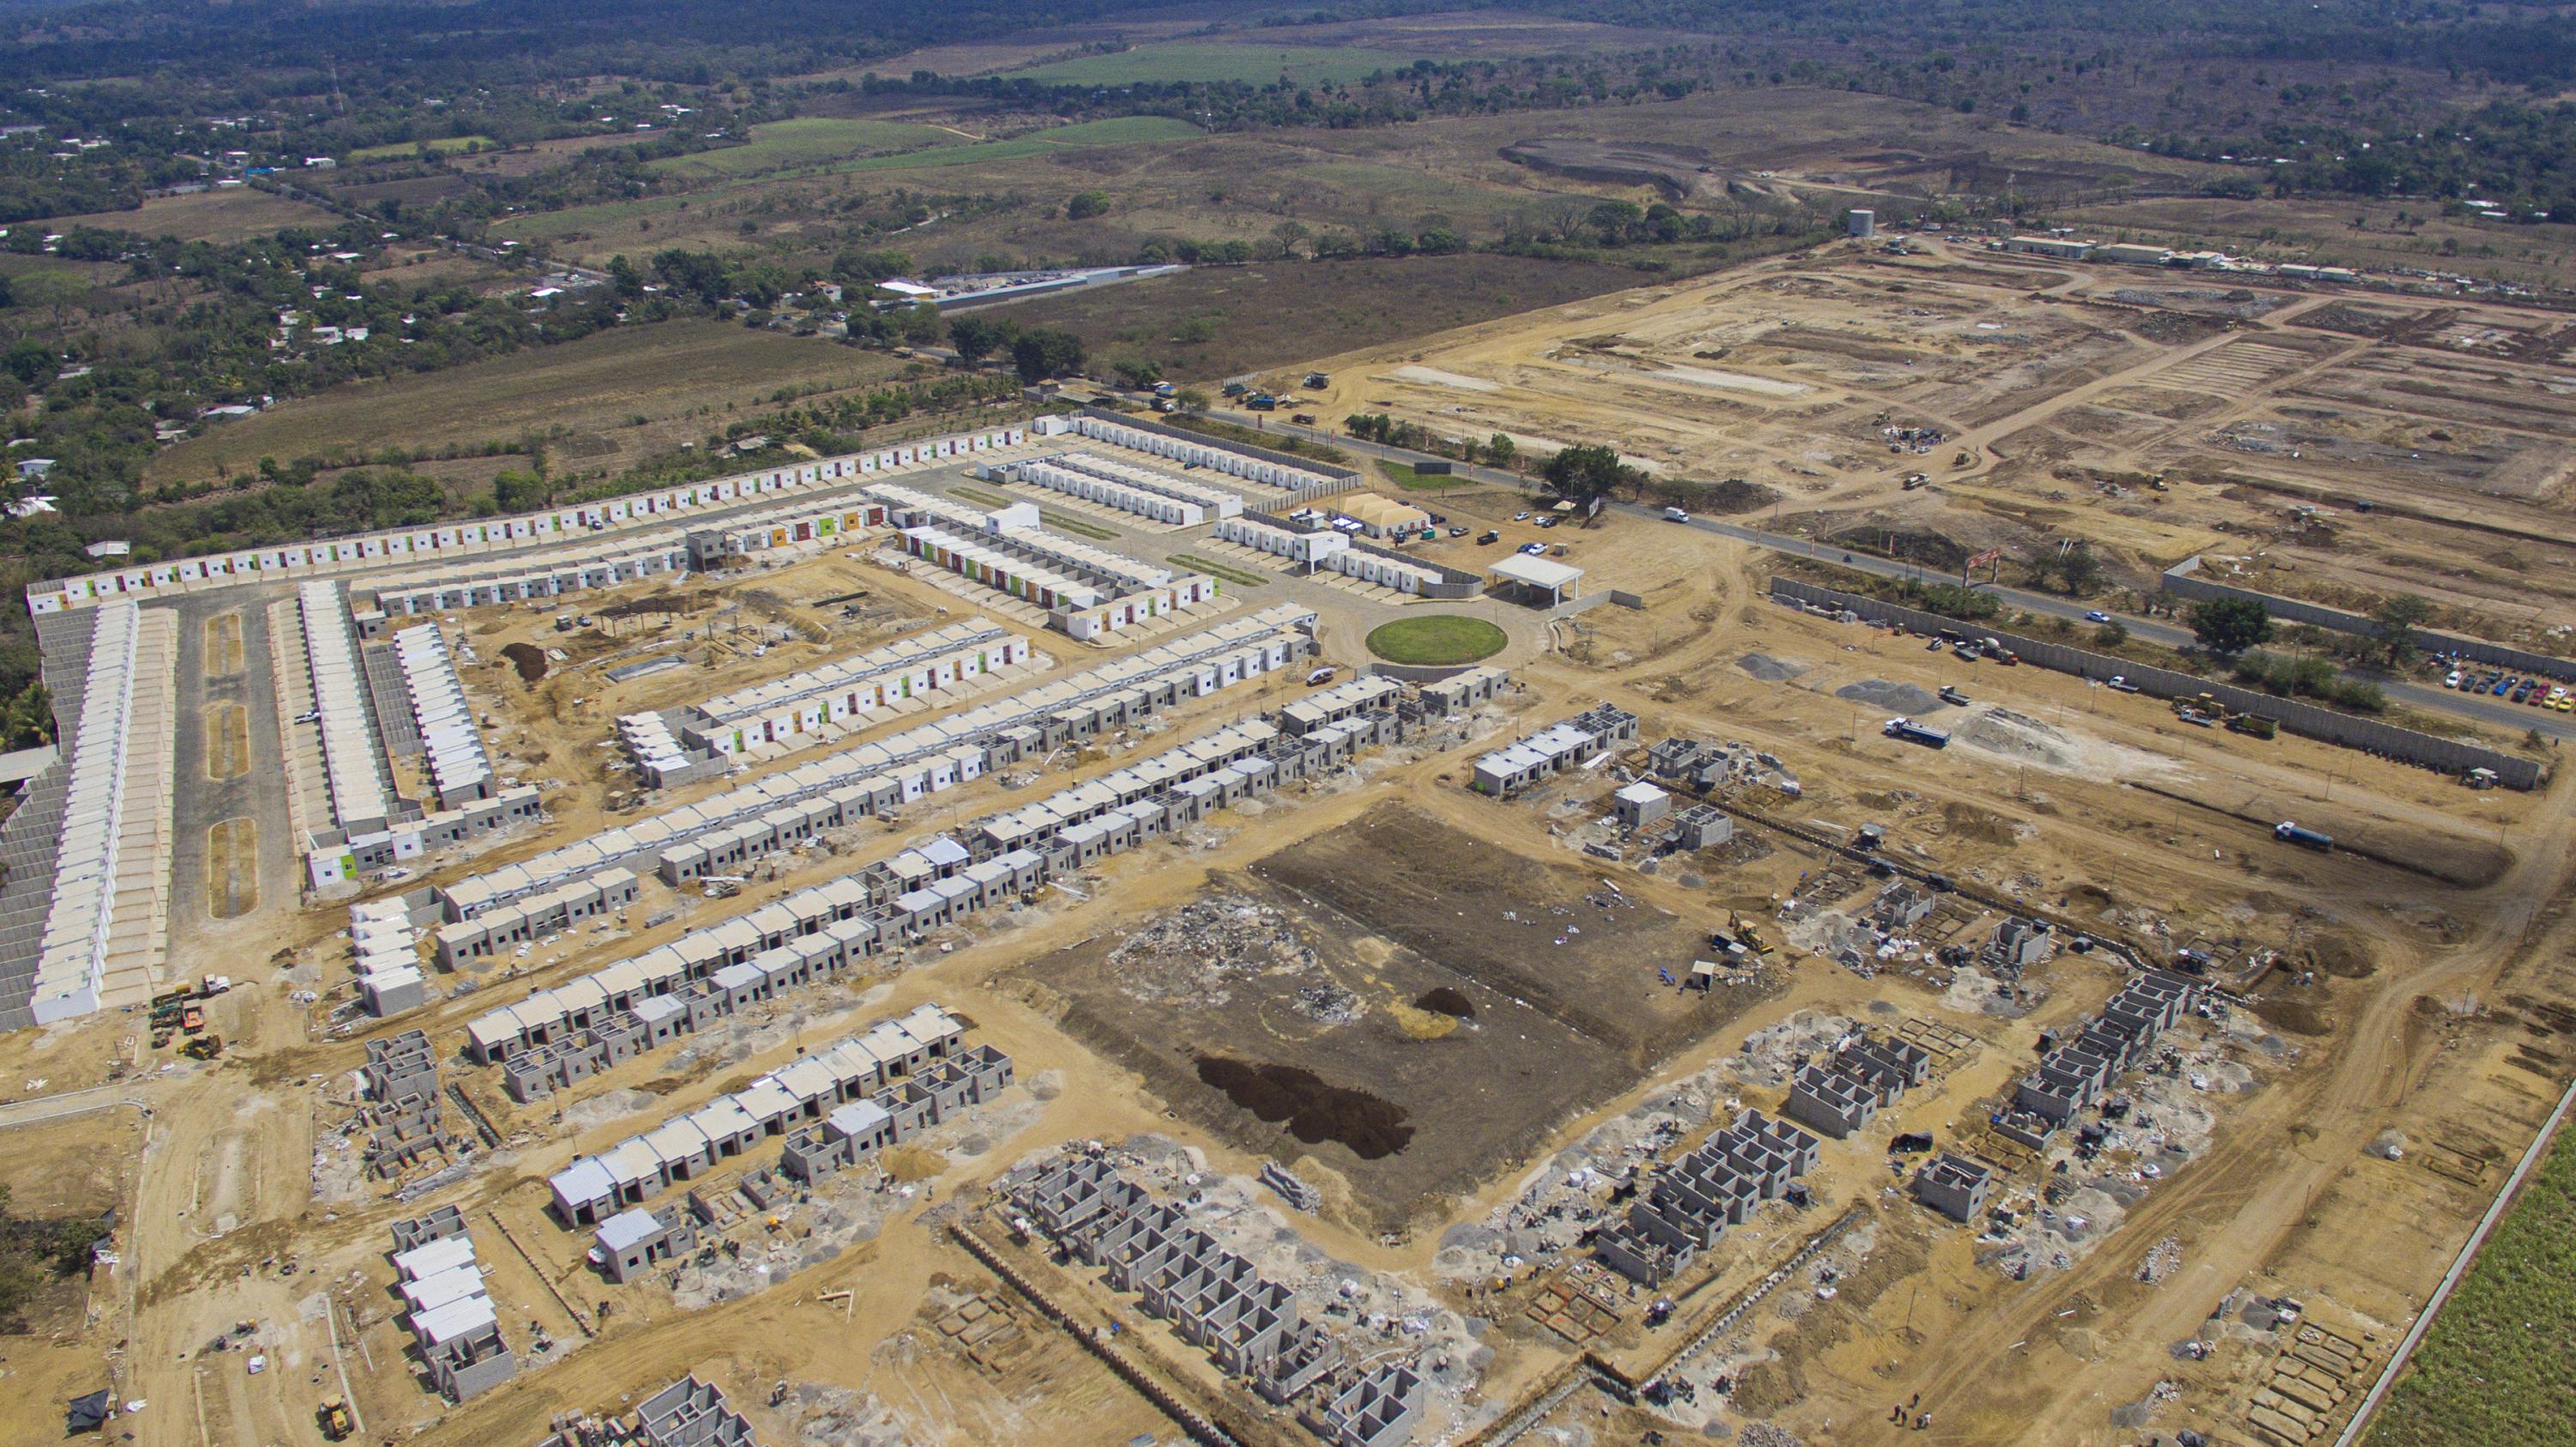 Image of the Fénix real estate construction site in Hacienda La Labor, Ahuachapán. Photo Víctor Peña